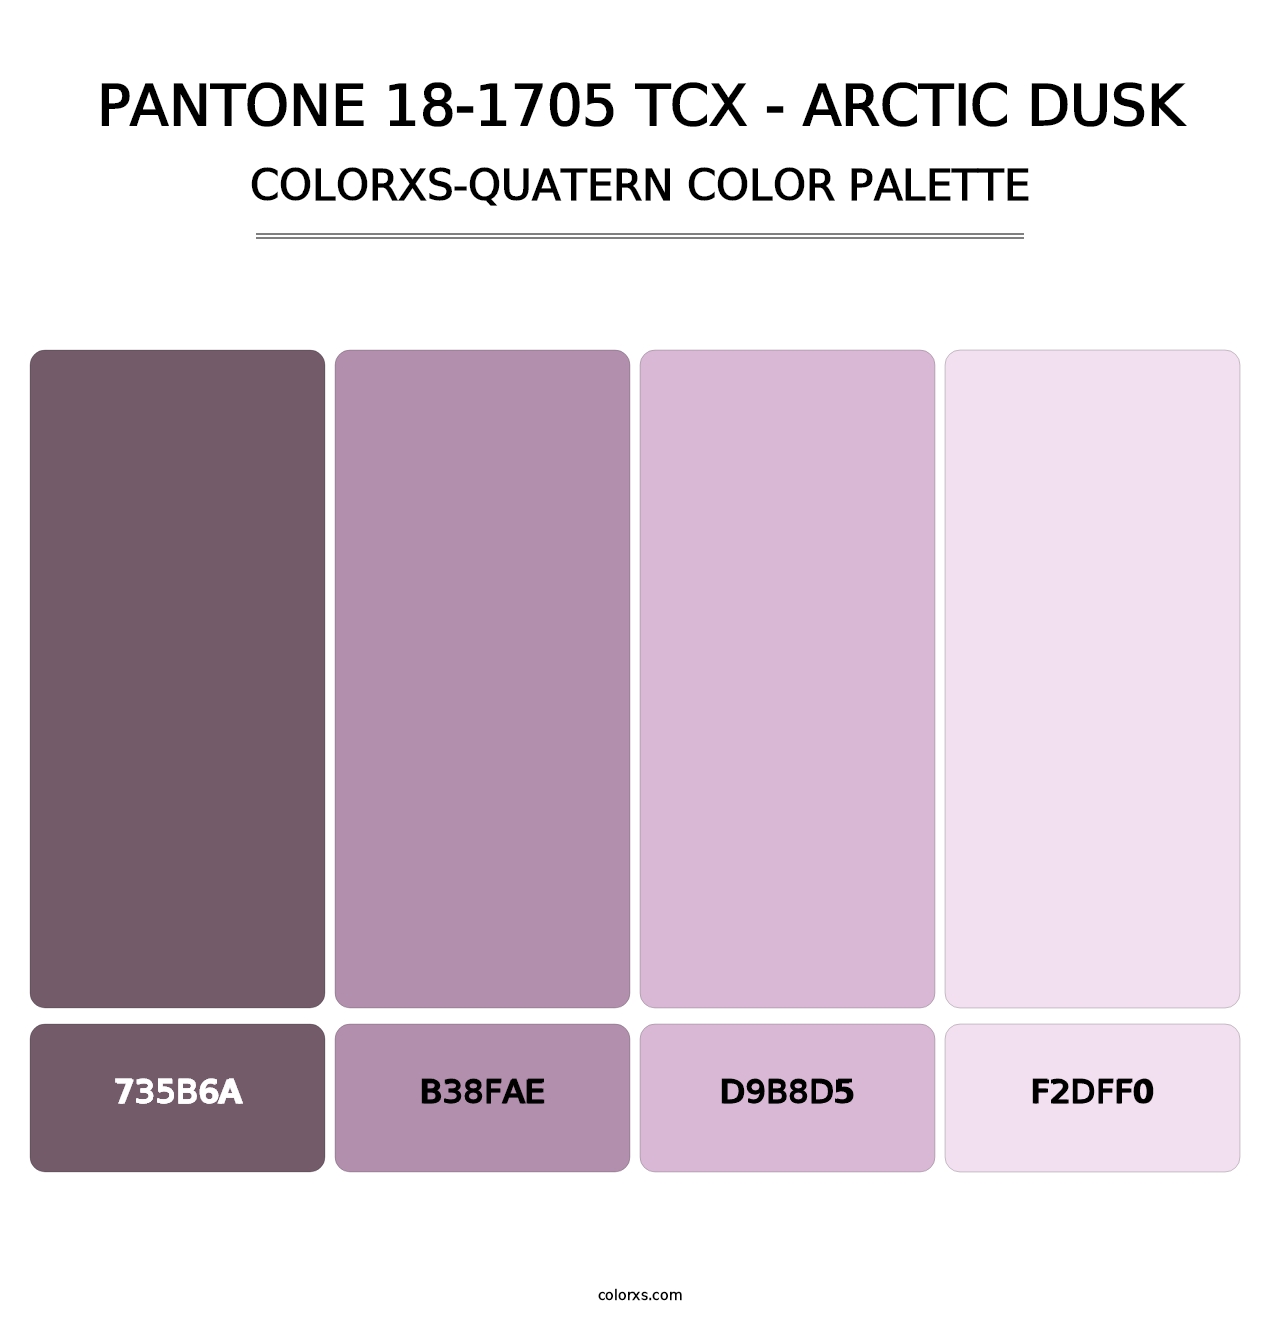 PANTONE 18-1705 TCX - Arctic Dusk - Colorxs Quatern Palette